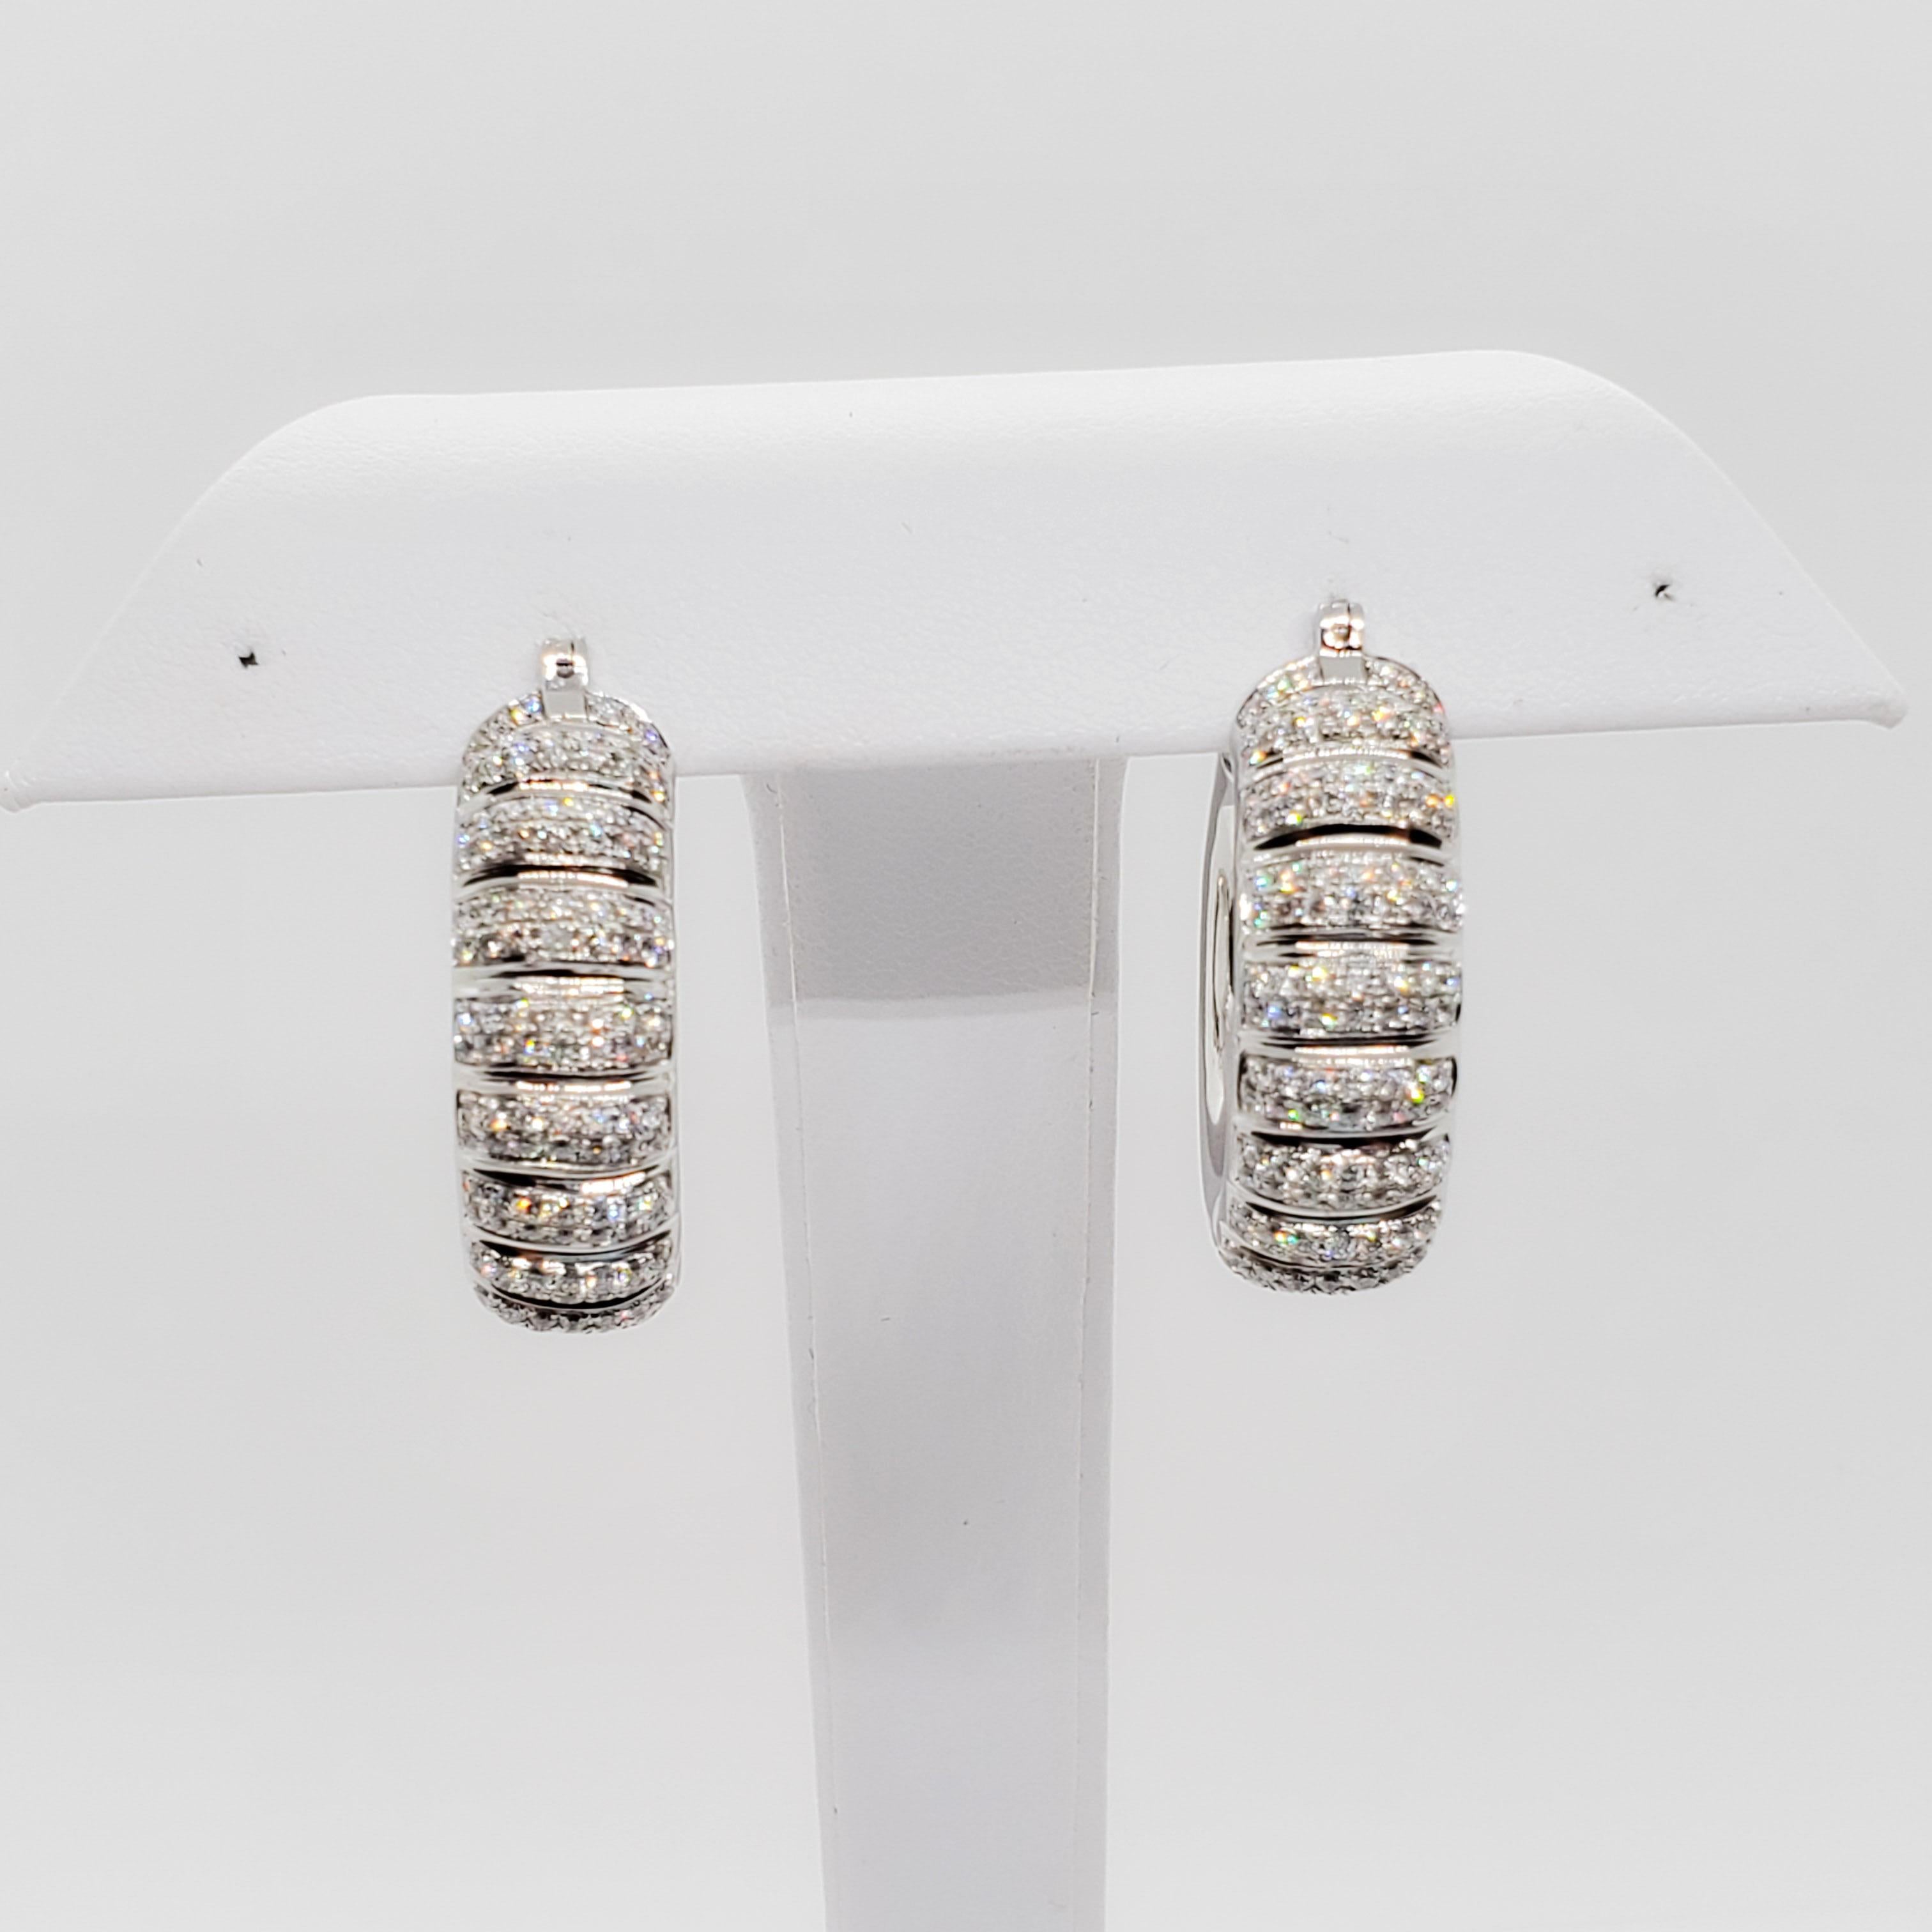 Magnifiques anneaux en diamant avec 3 carats de diamants de bonne qualité, blancs et brillants dans des montures en or blanc 18k faites à la main.  Ces boucles d'oreilles sont épaisses et amusantes.  Parfaites pour le jour ou la nuit, elles sont